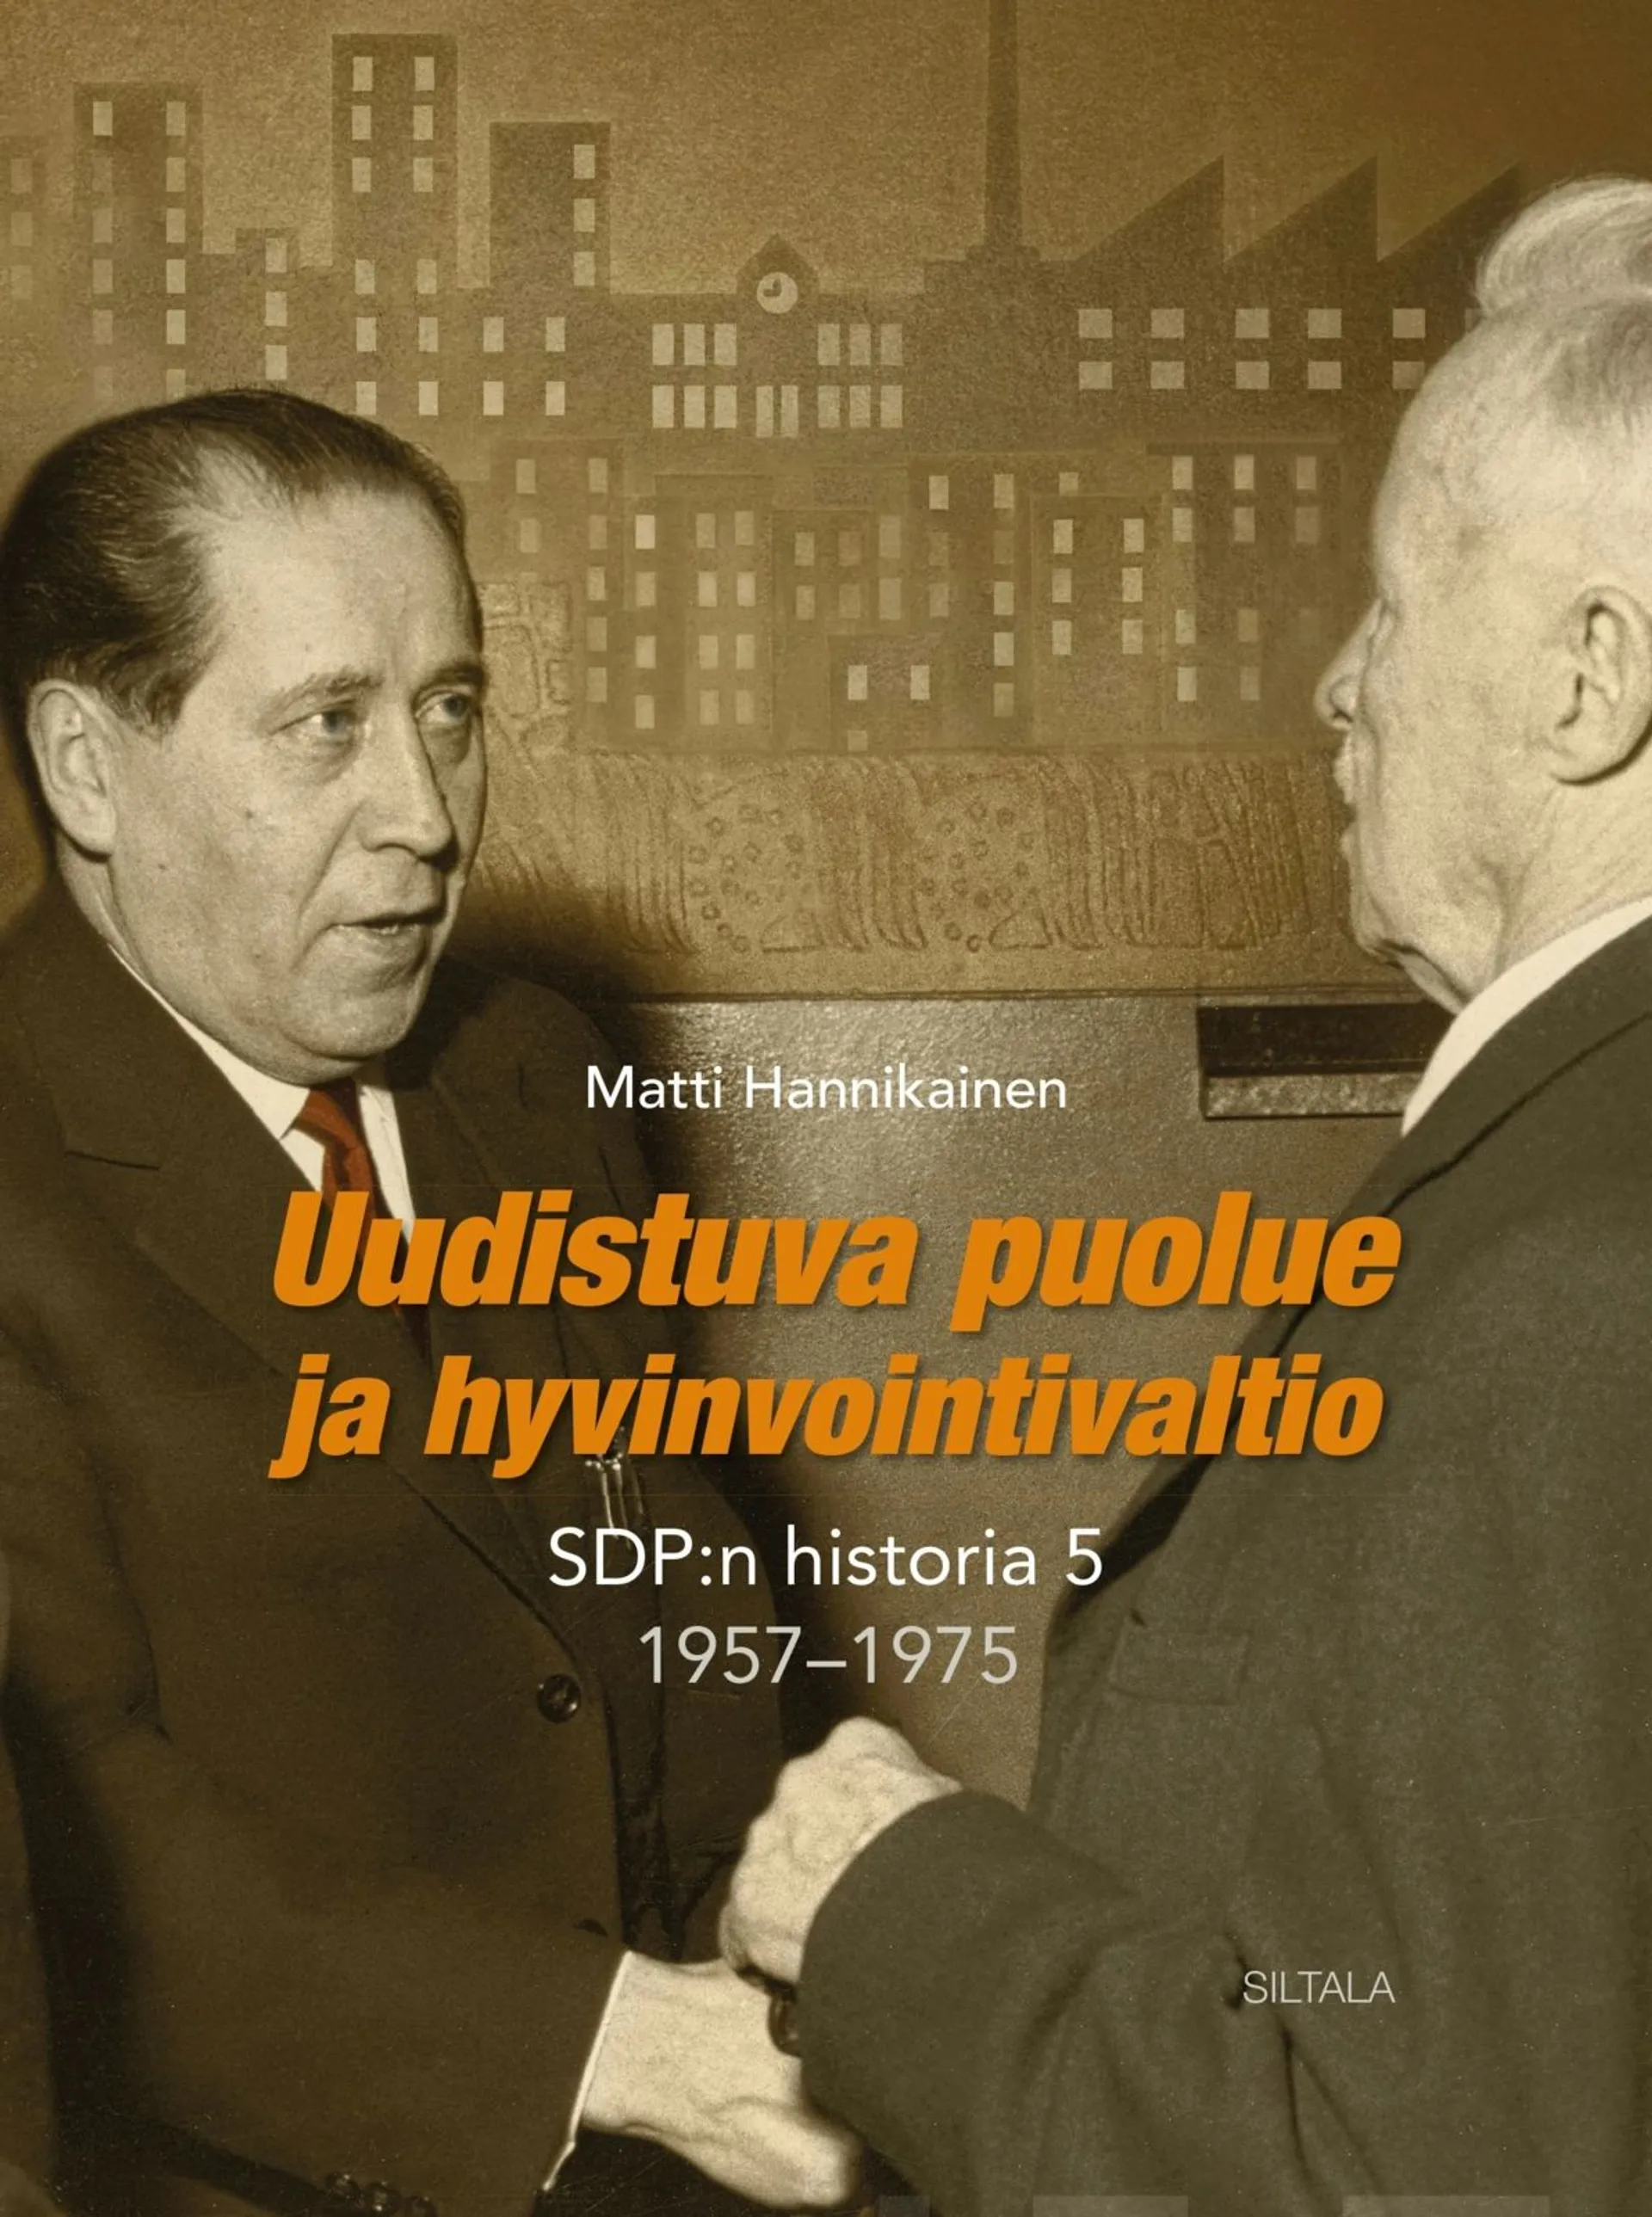 Hannikainen, Uudistuva puolue ja hyvinvointivaltio - SDP:n historia 5, 1957-1975